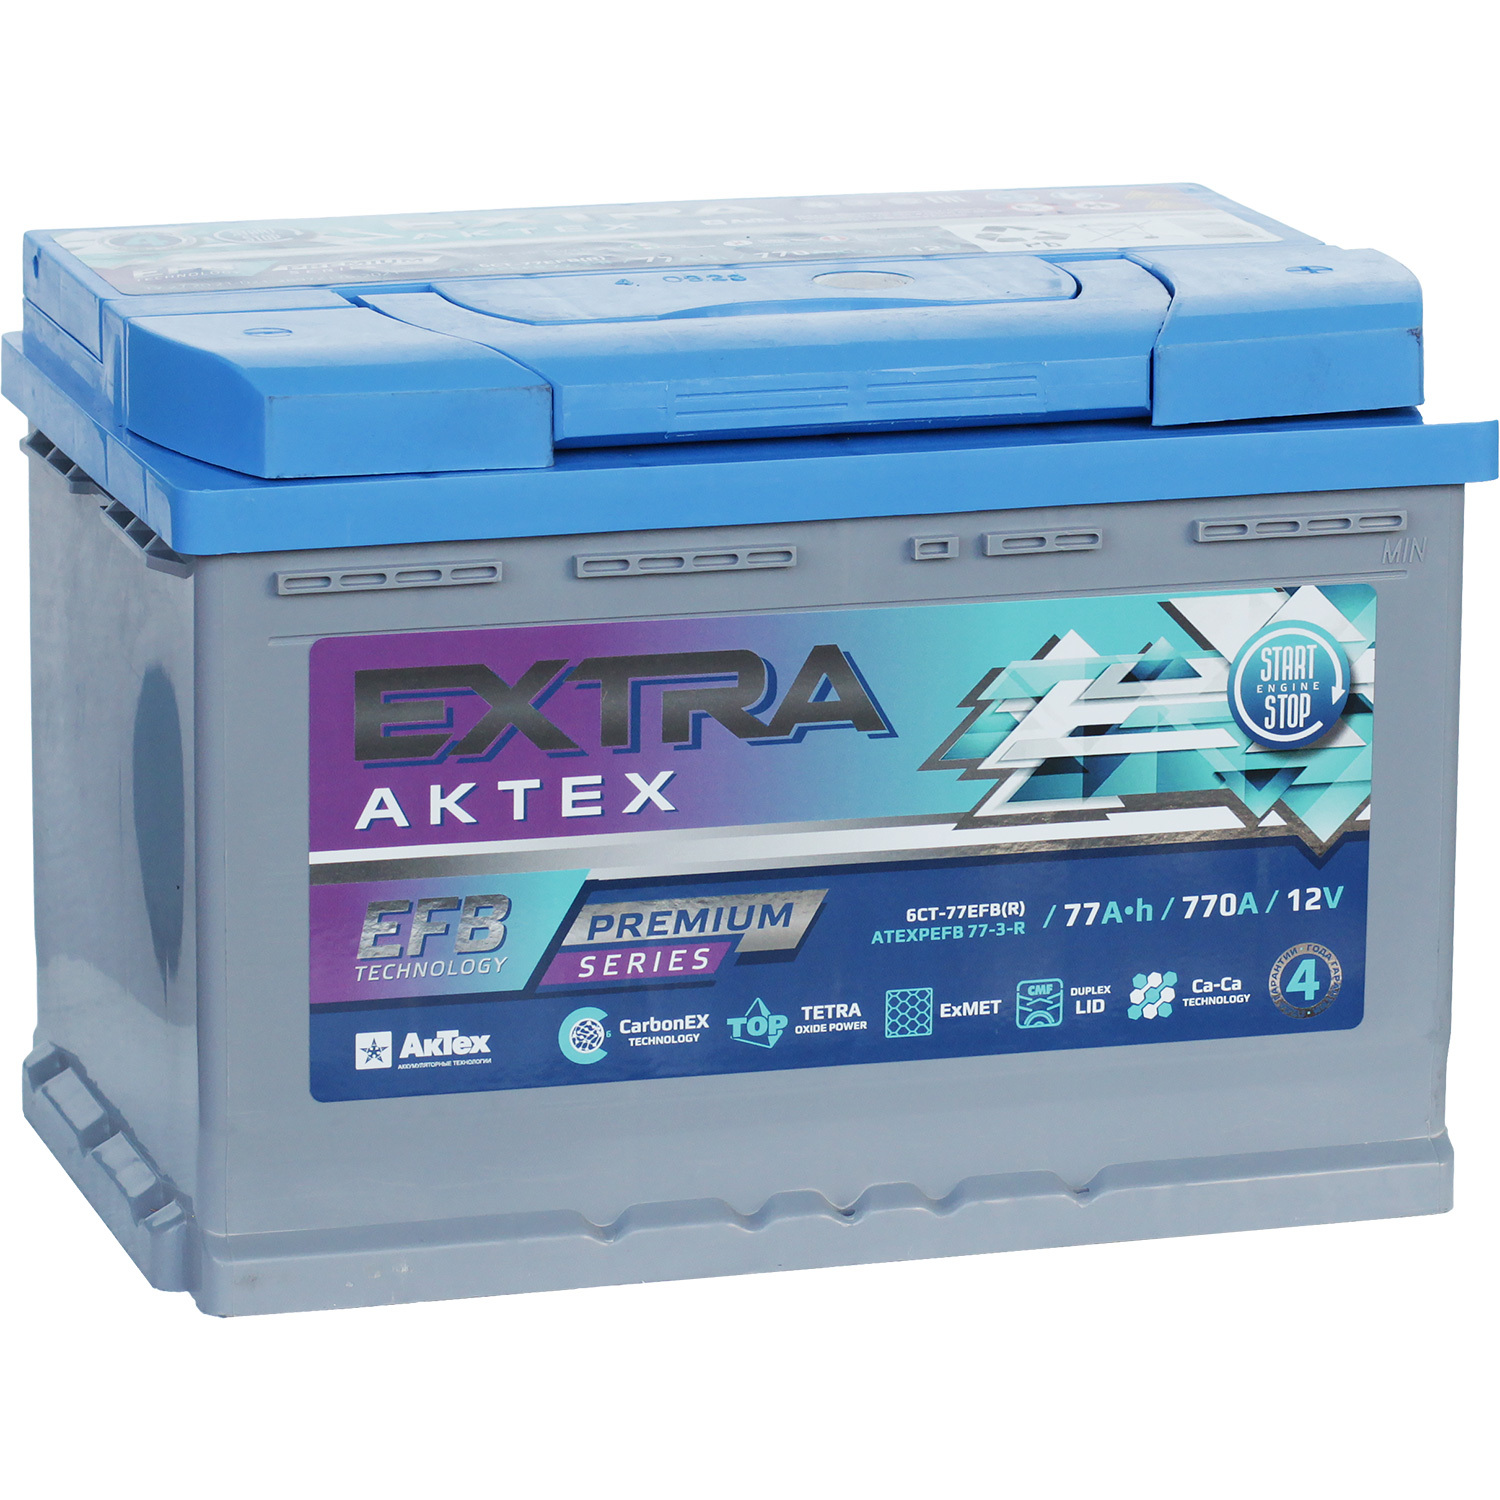 Автомобильный аккумулятор Актех Extra 77 Ач обратная полярность L3, размер L3 ATEXPEFB 77-3-R - фото 1